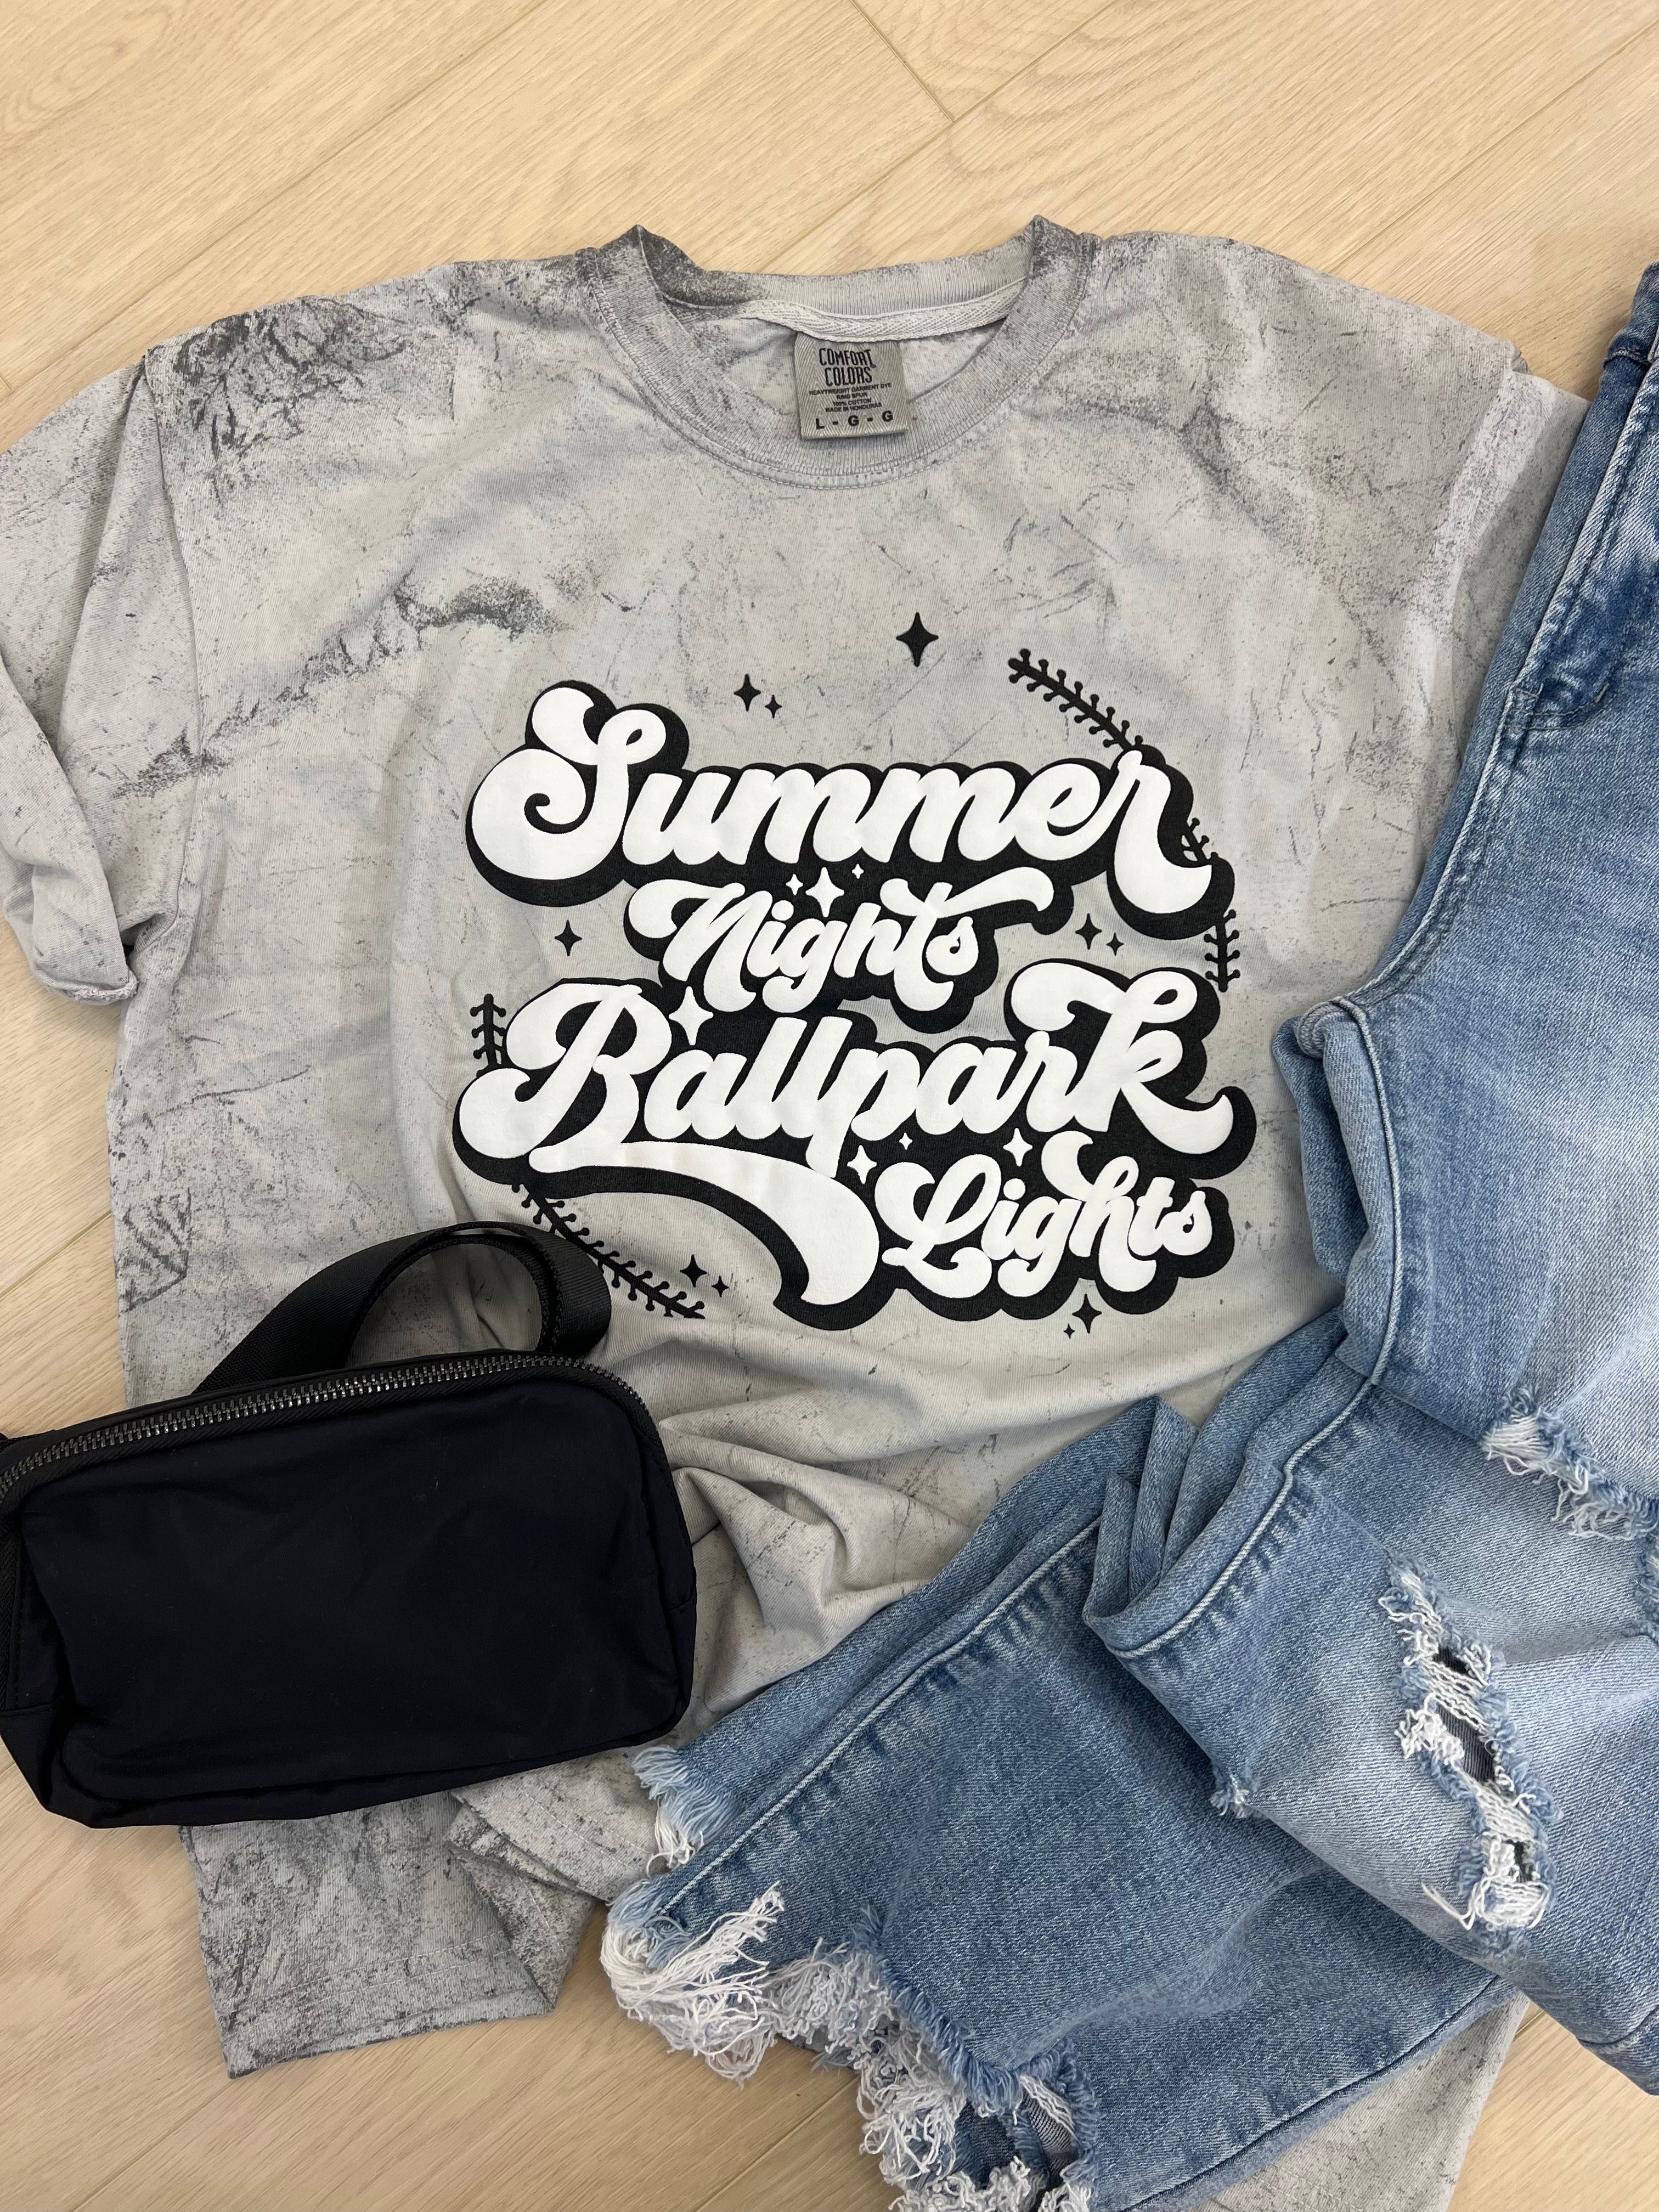 Summer Nights Ballpark Lights Tee or Sweatshirt